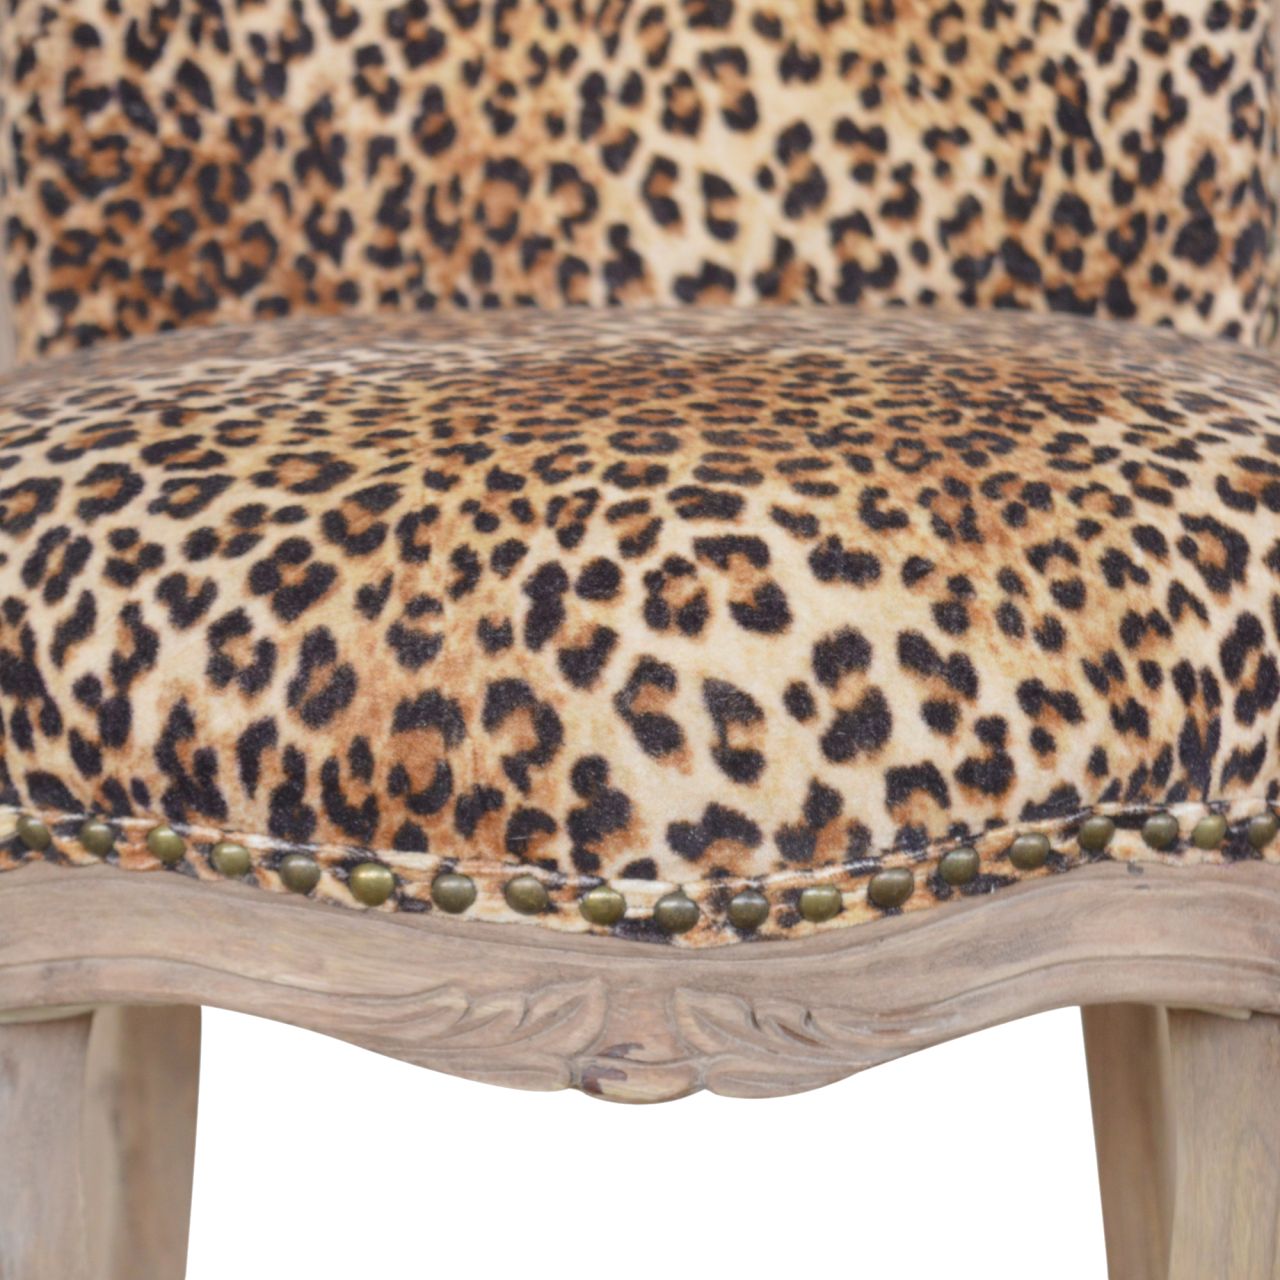 Stuhl mit Leopardenmuster und Nieten